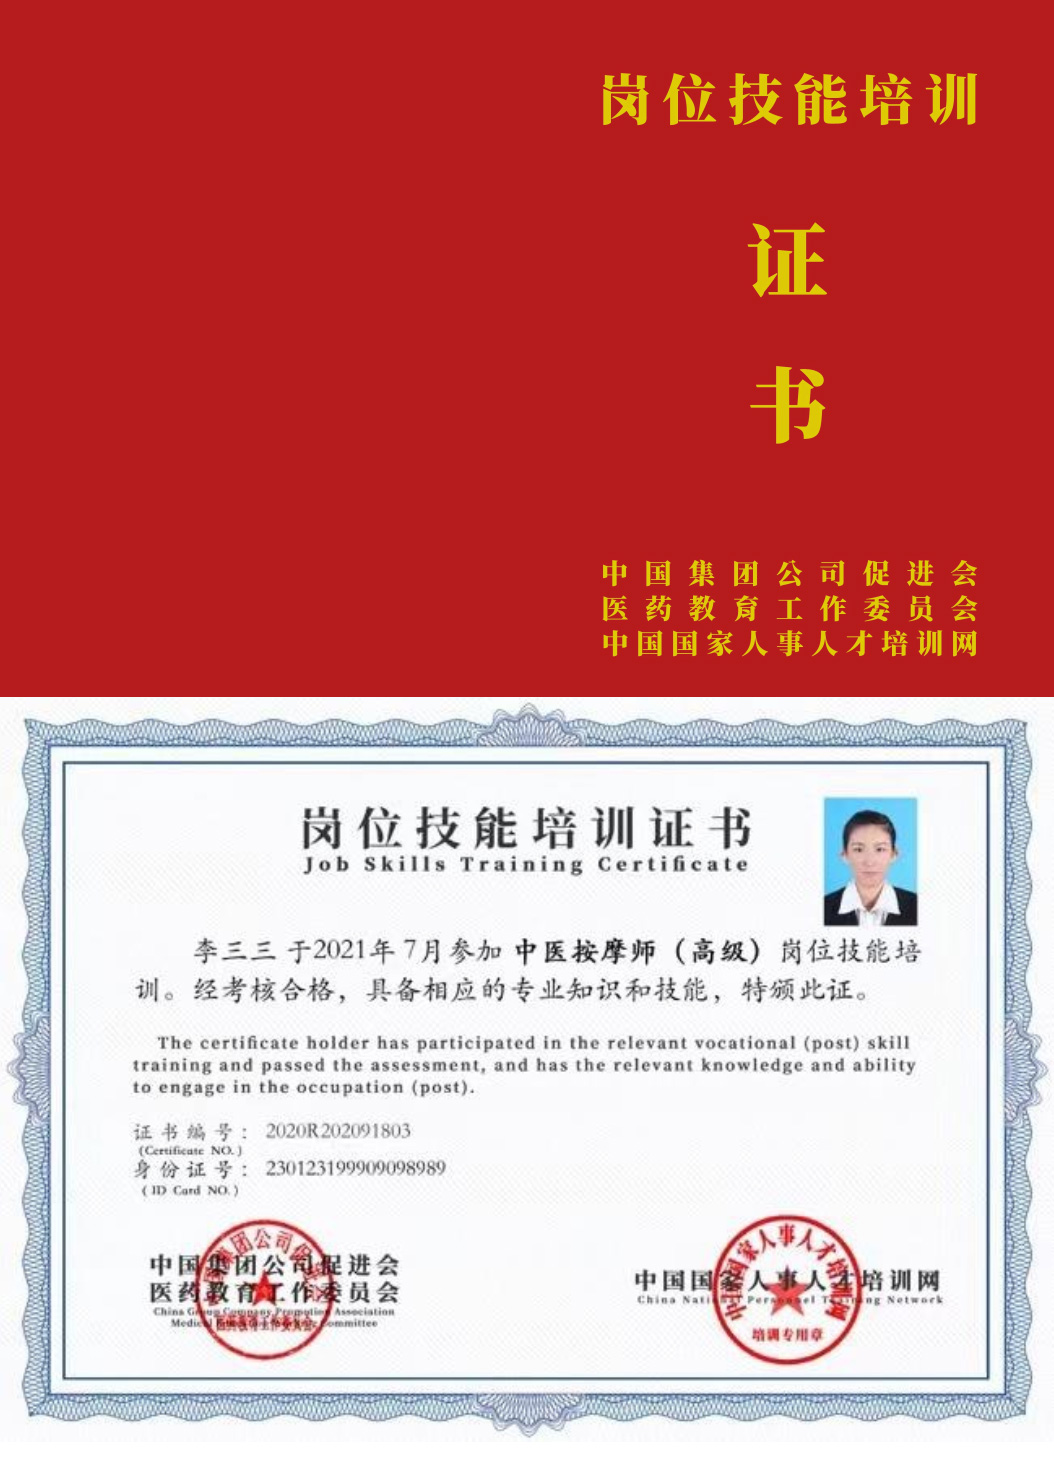 中国国家人事人才培训网 中医特色调理师 岗位技能培训证书